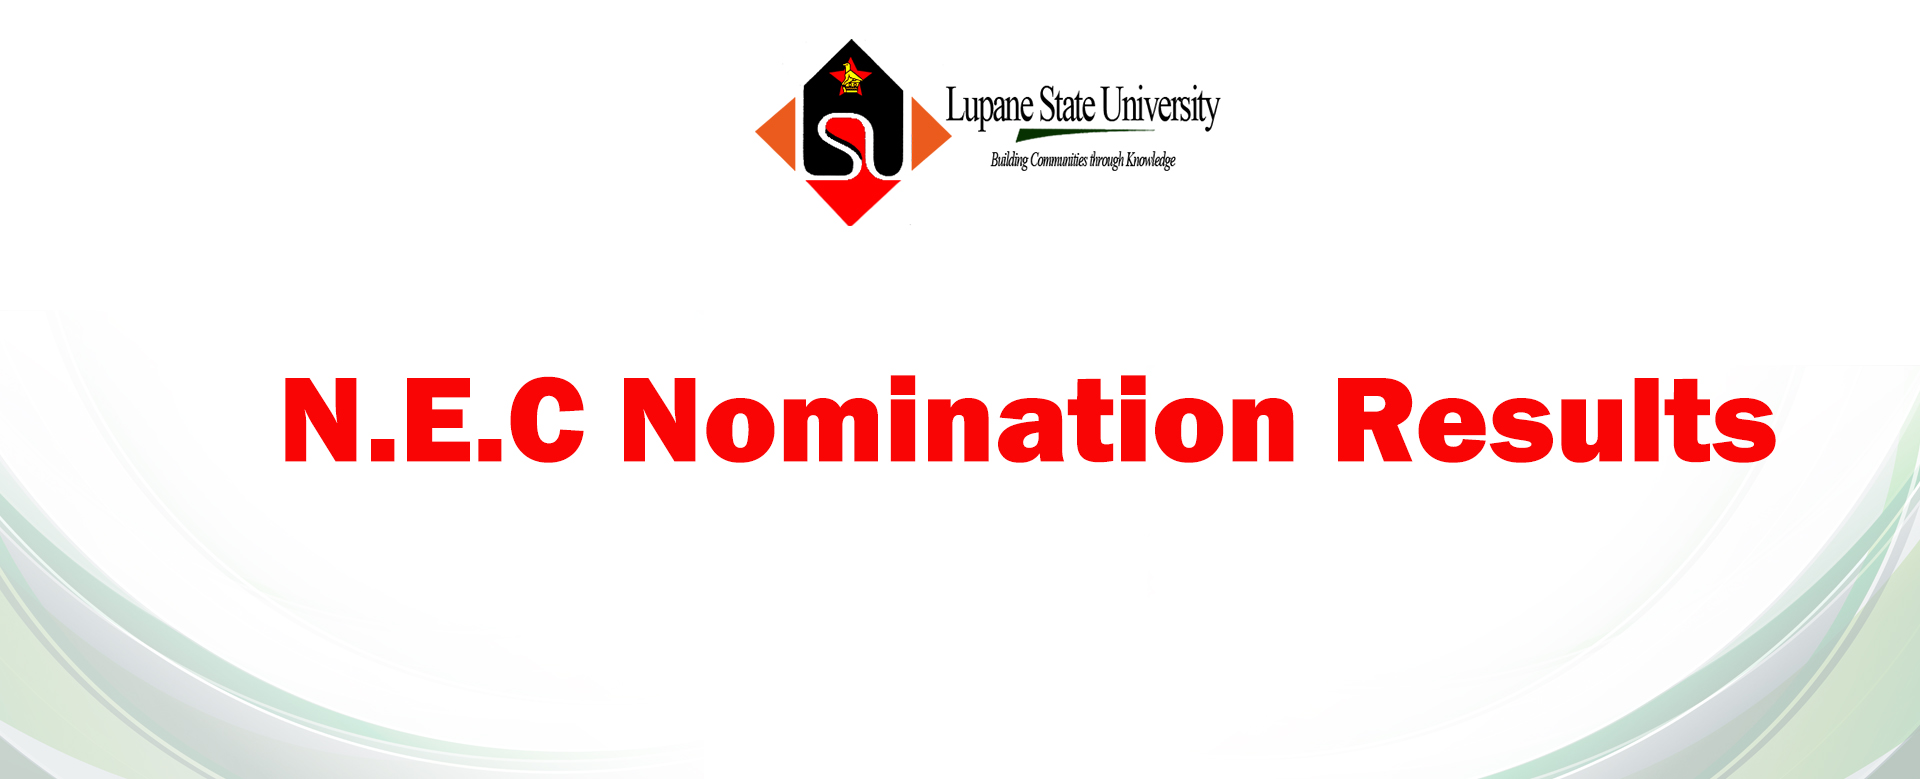 S.E.C Nomination Results